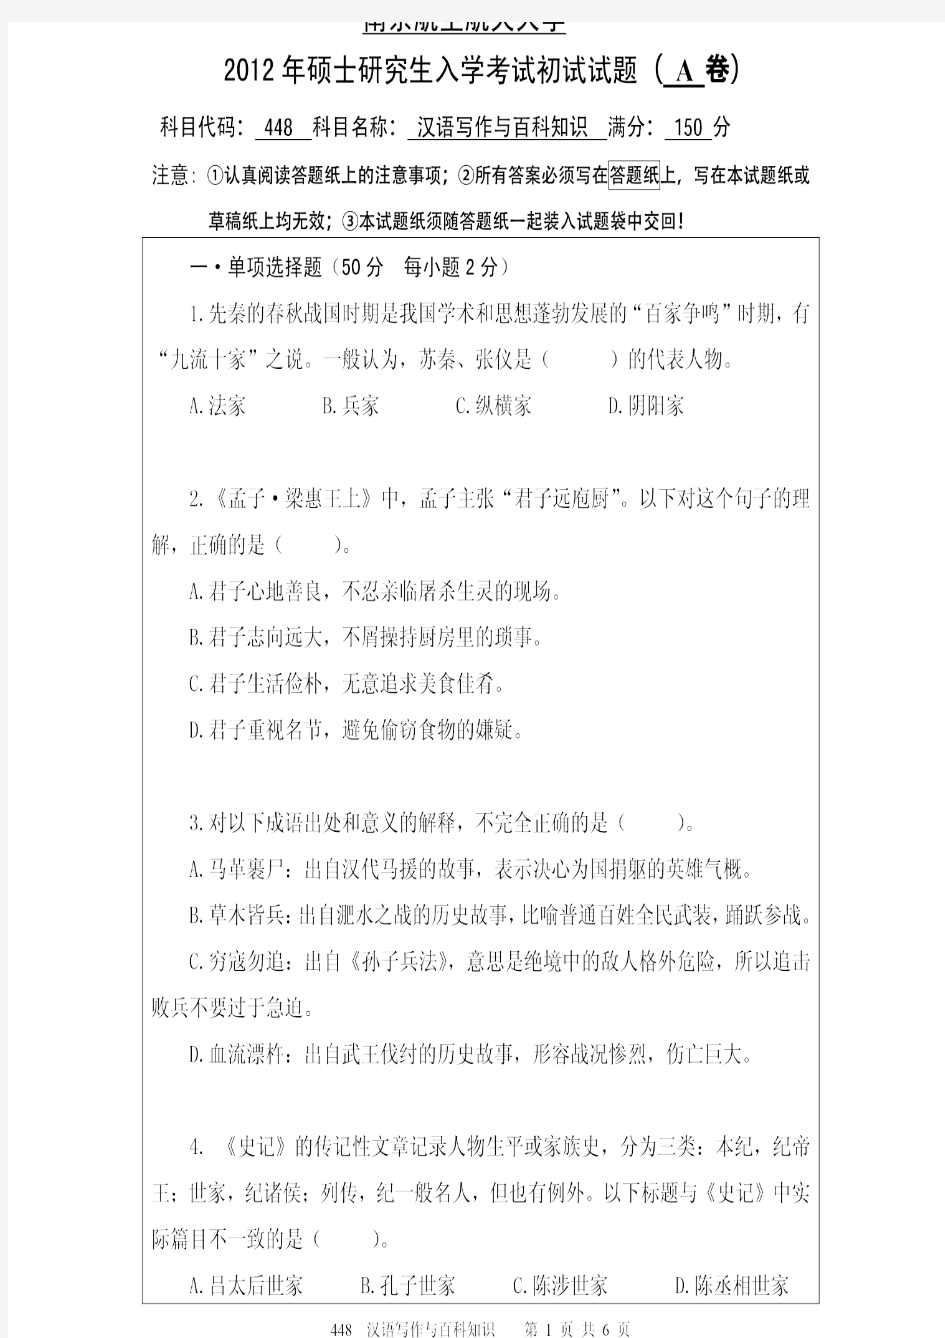 南京航空航天大学2012年《448汉语写作与百科知识》考研专业课真题试卷